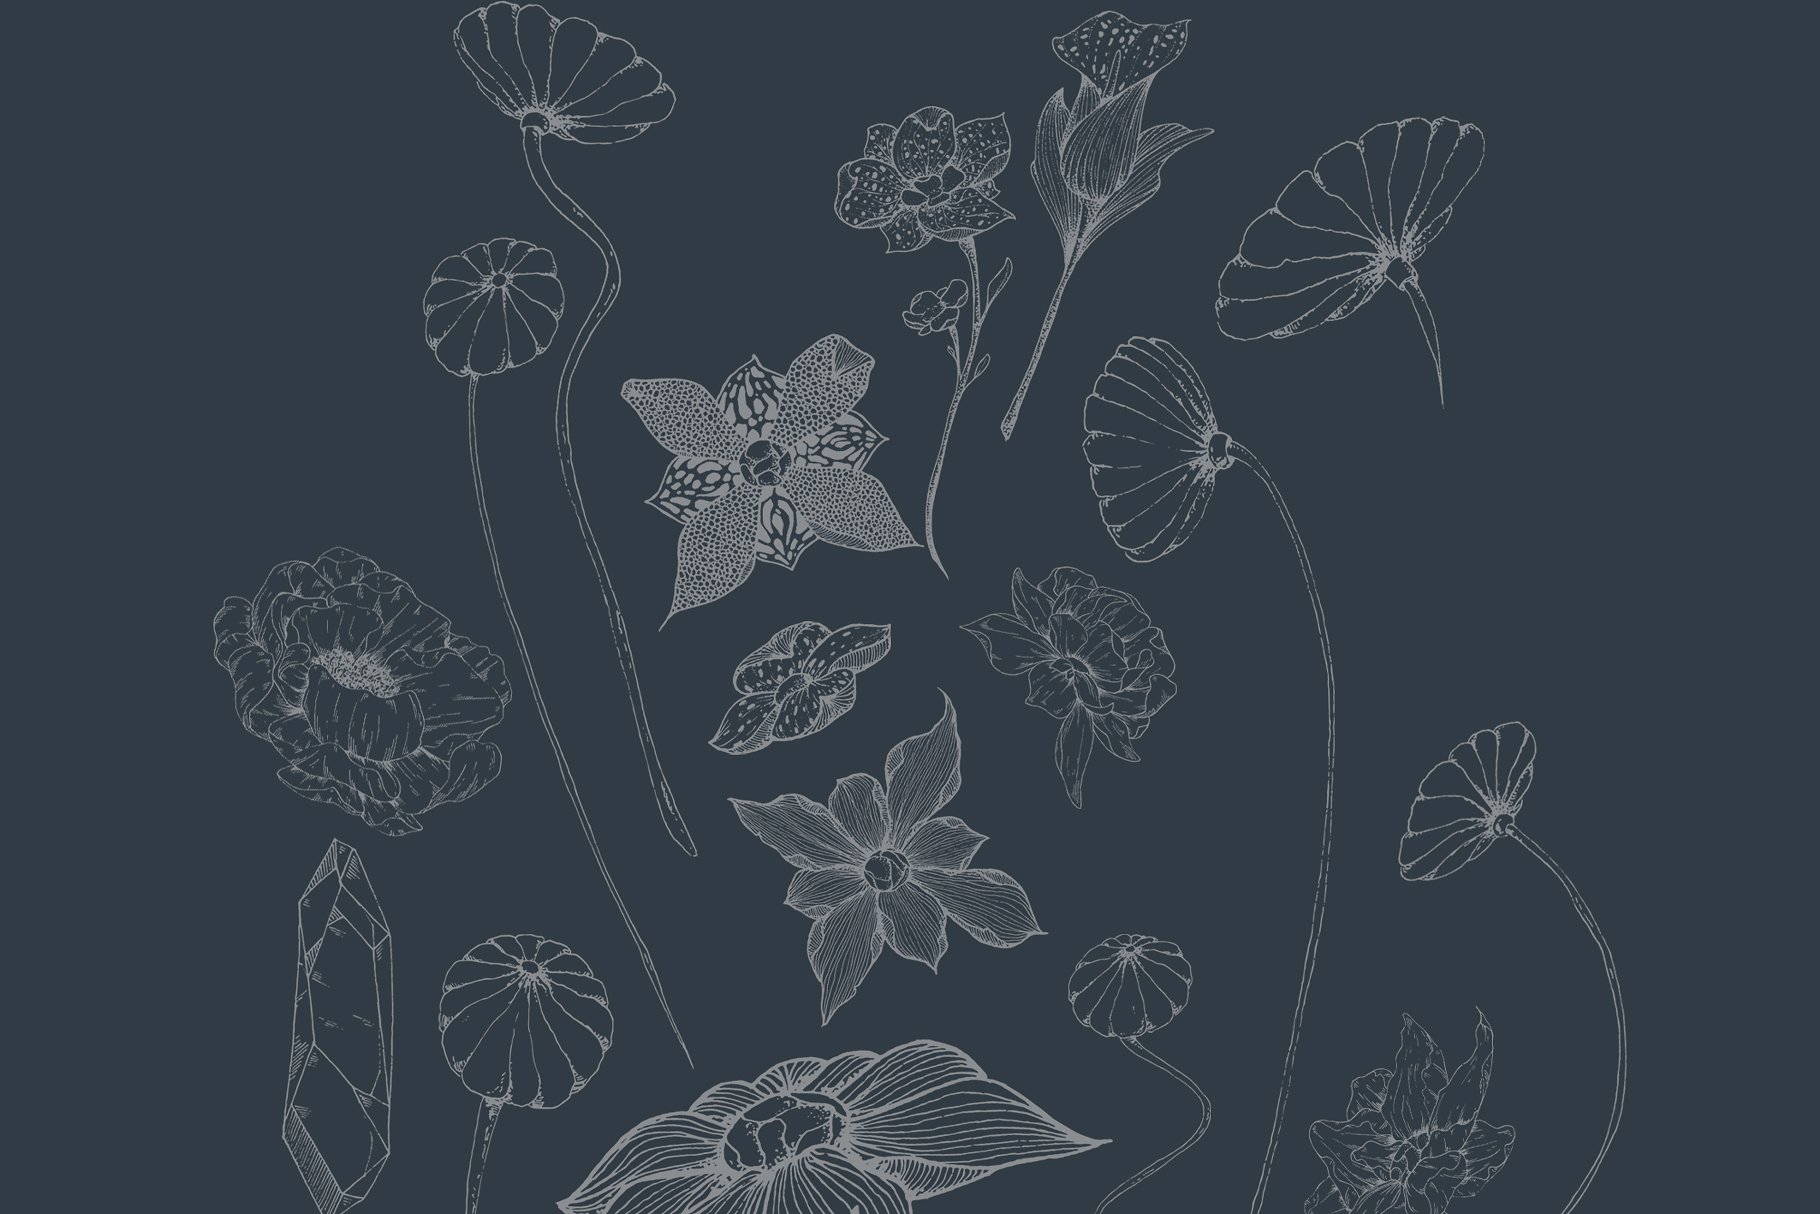 虚实结合黑色背景手绘矢量花卉图形素材 Black Orchid Illustration Set插图3